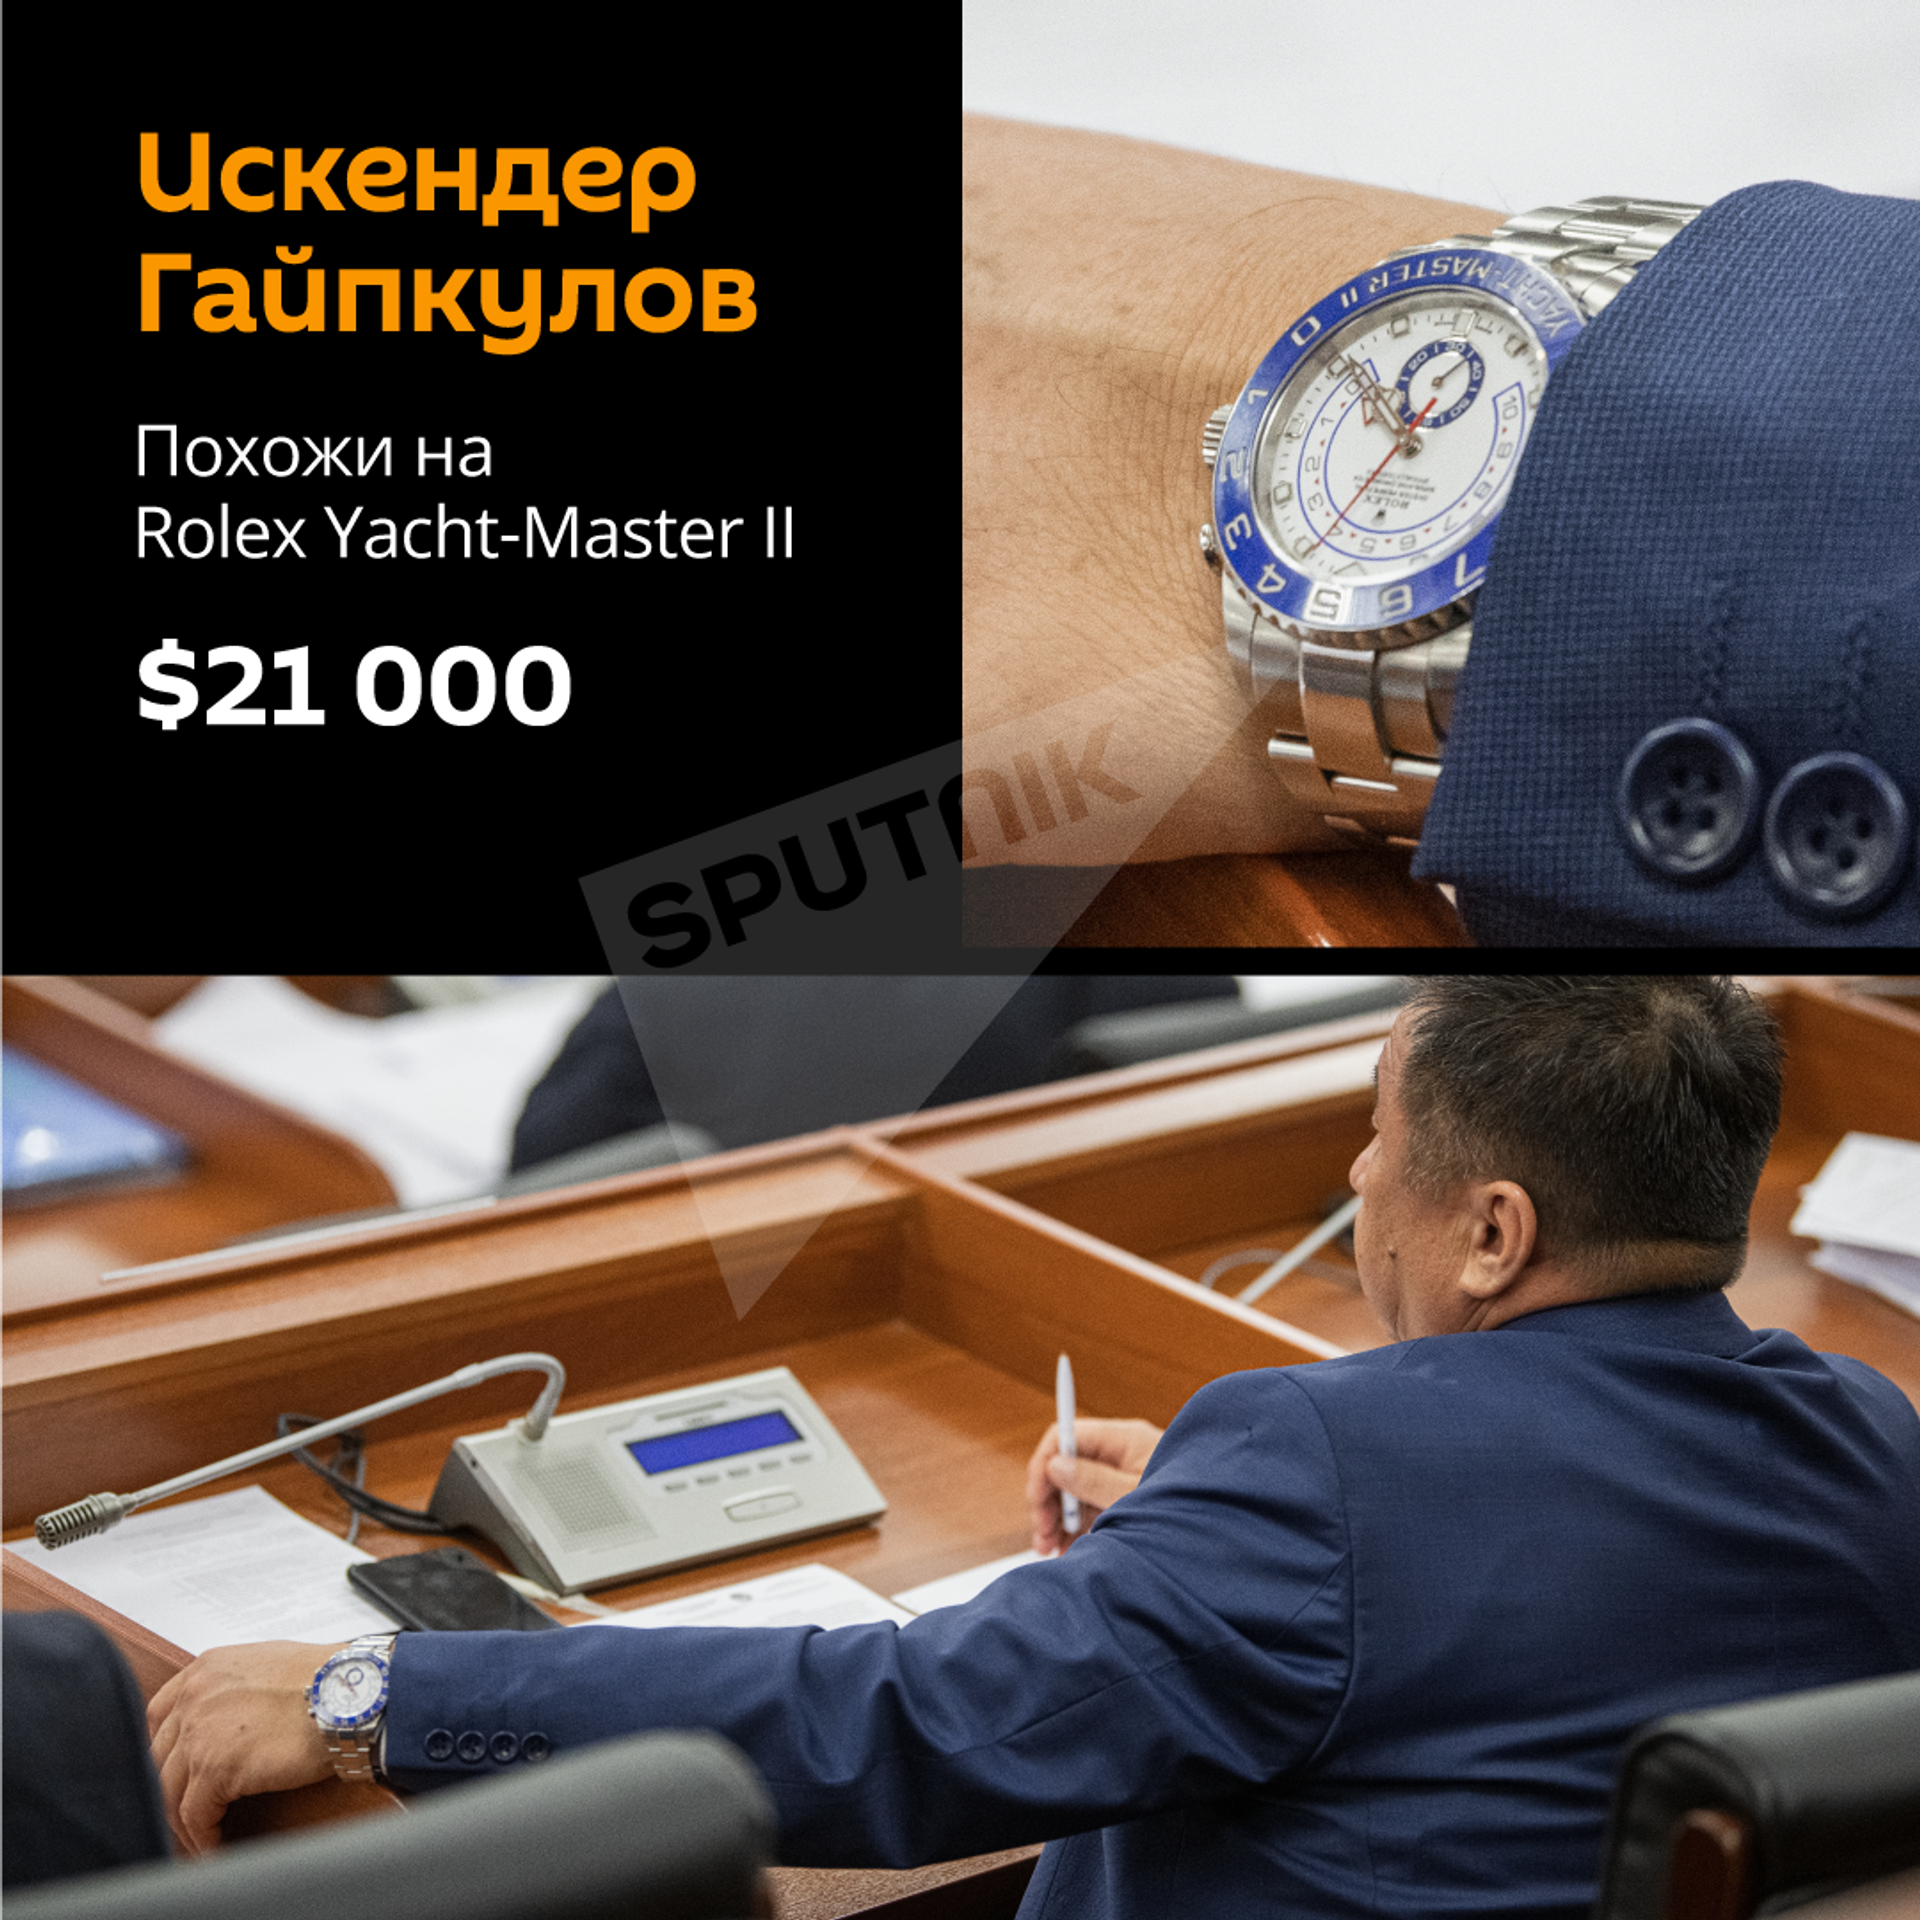 Стоят, как дома и квартиры — фото и цены часов кыргызских депутатов - Sputnik Кыргызстан, 1920, 26.02.2021